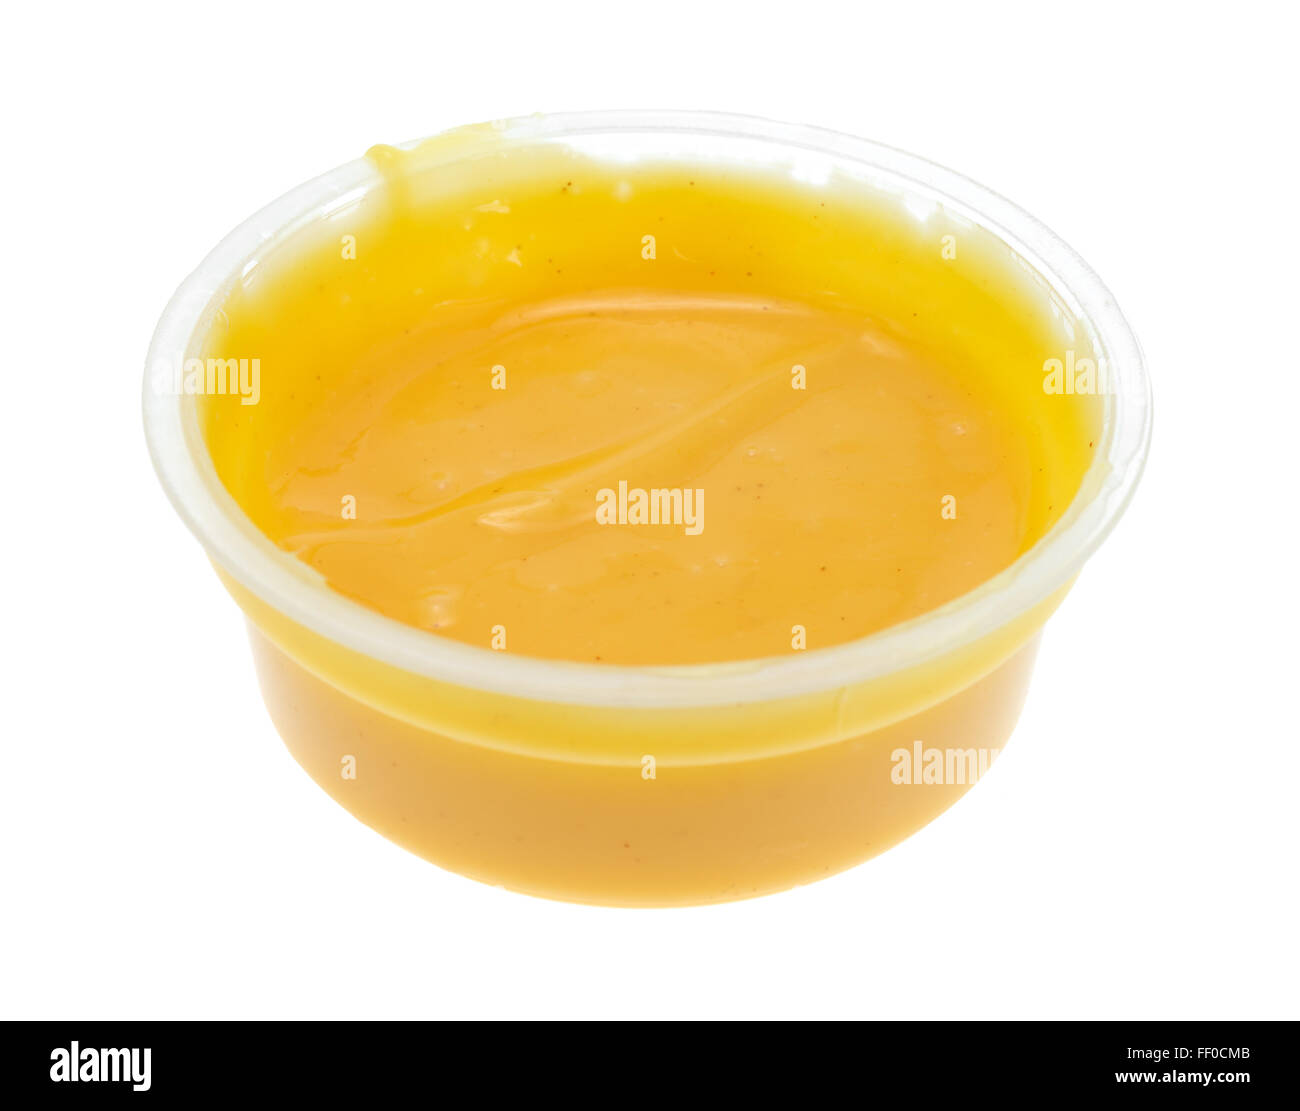 Vue latérale d'un petit contenant de vinaigrette moutarde miel isolé sur un fond blanc. Banque D'Images